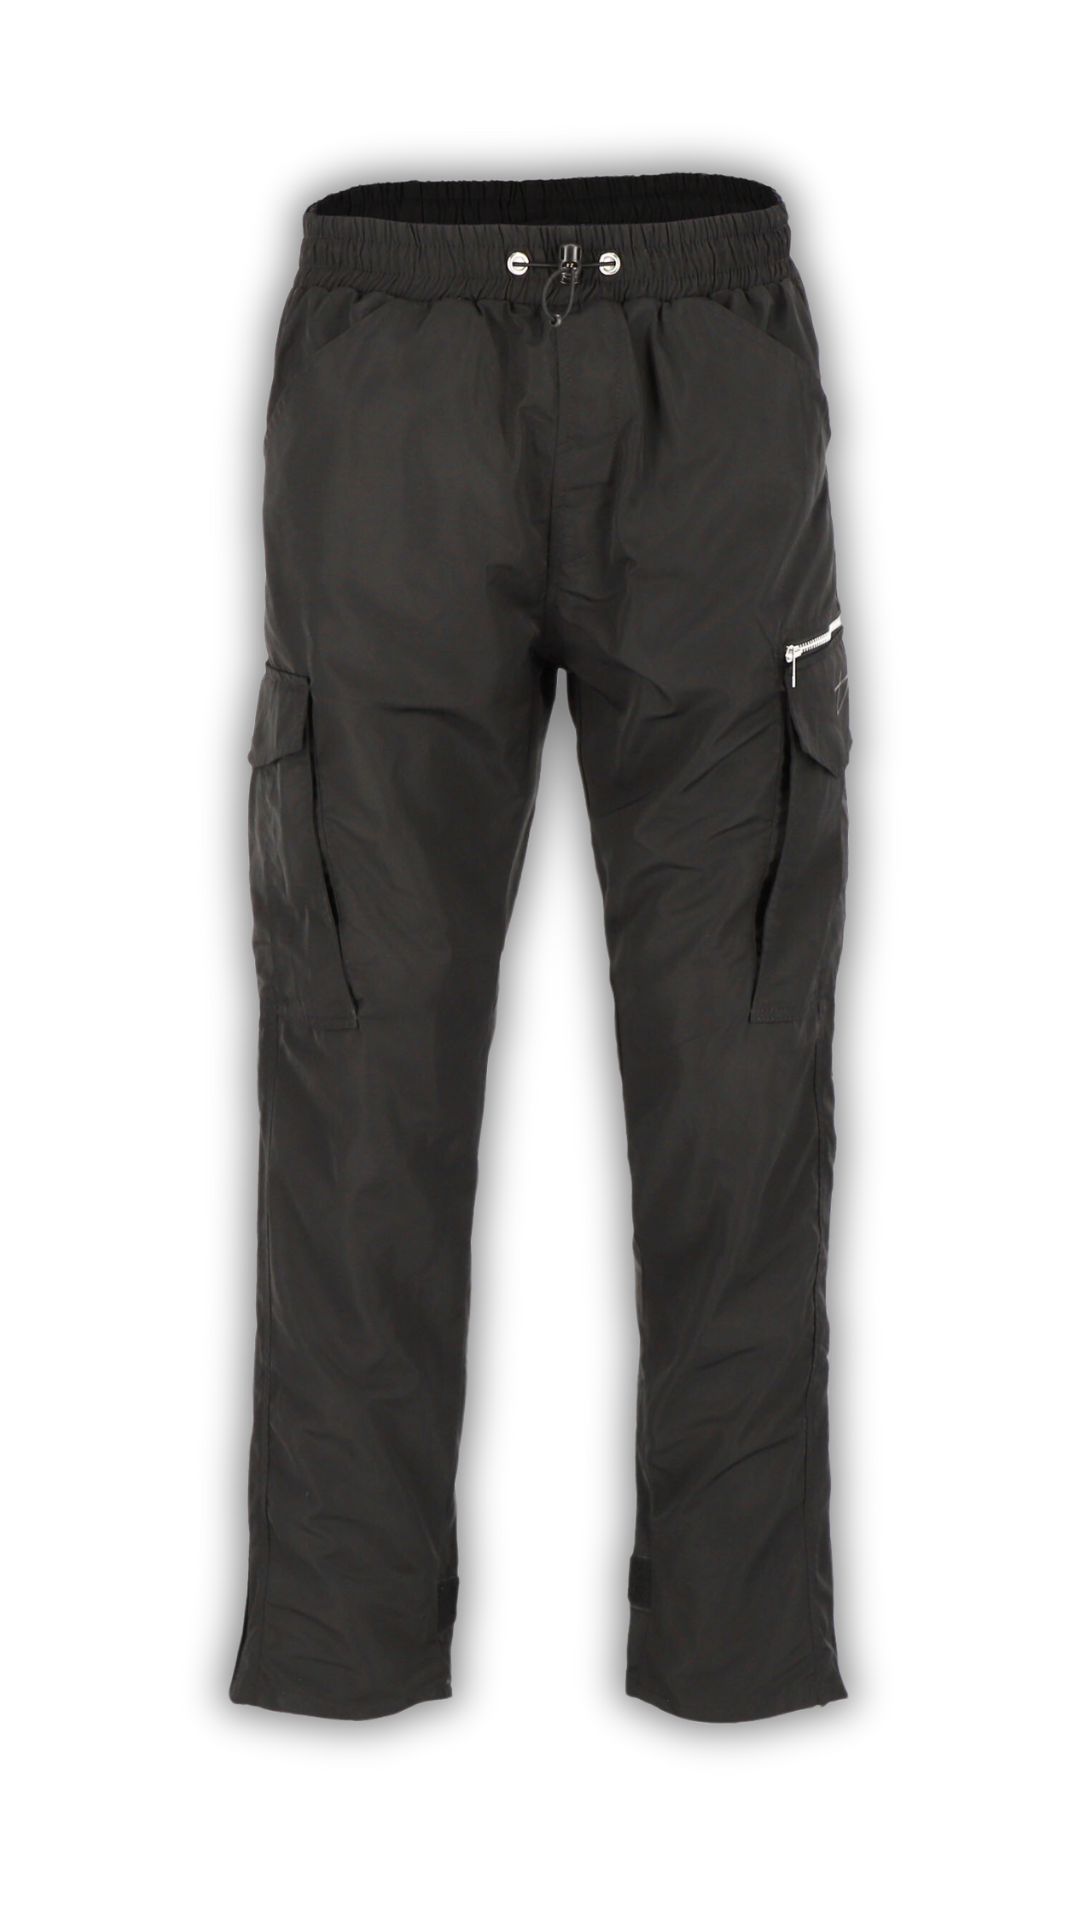 Decider Trackpants in schwarz mit Taschen und Reißverschluss vor transparentem Hintergrund